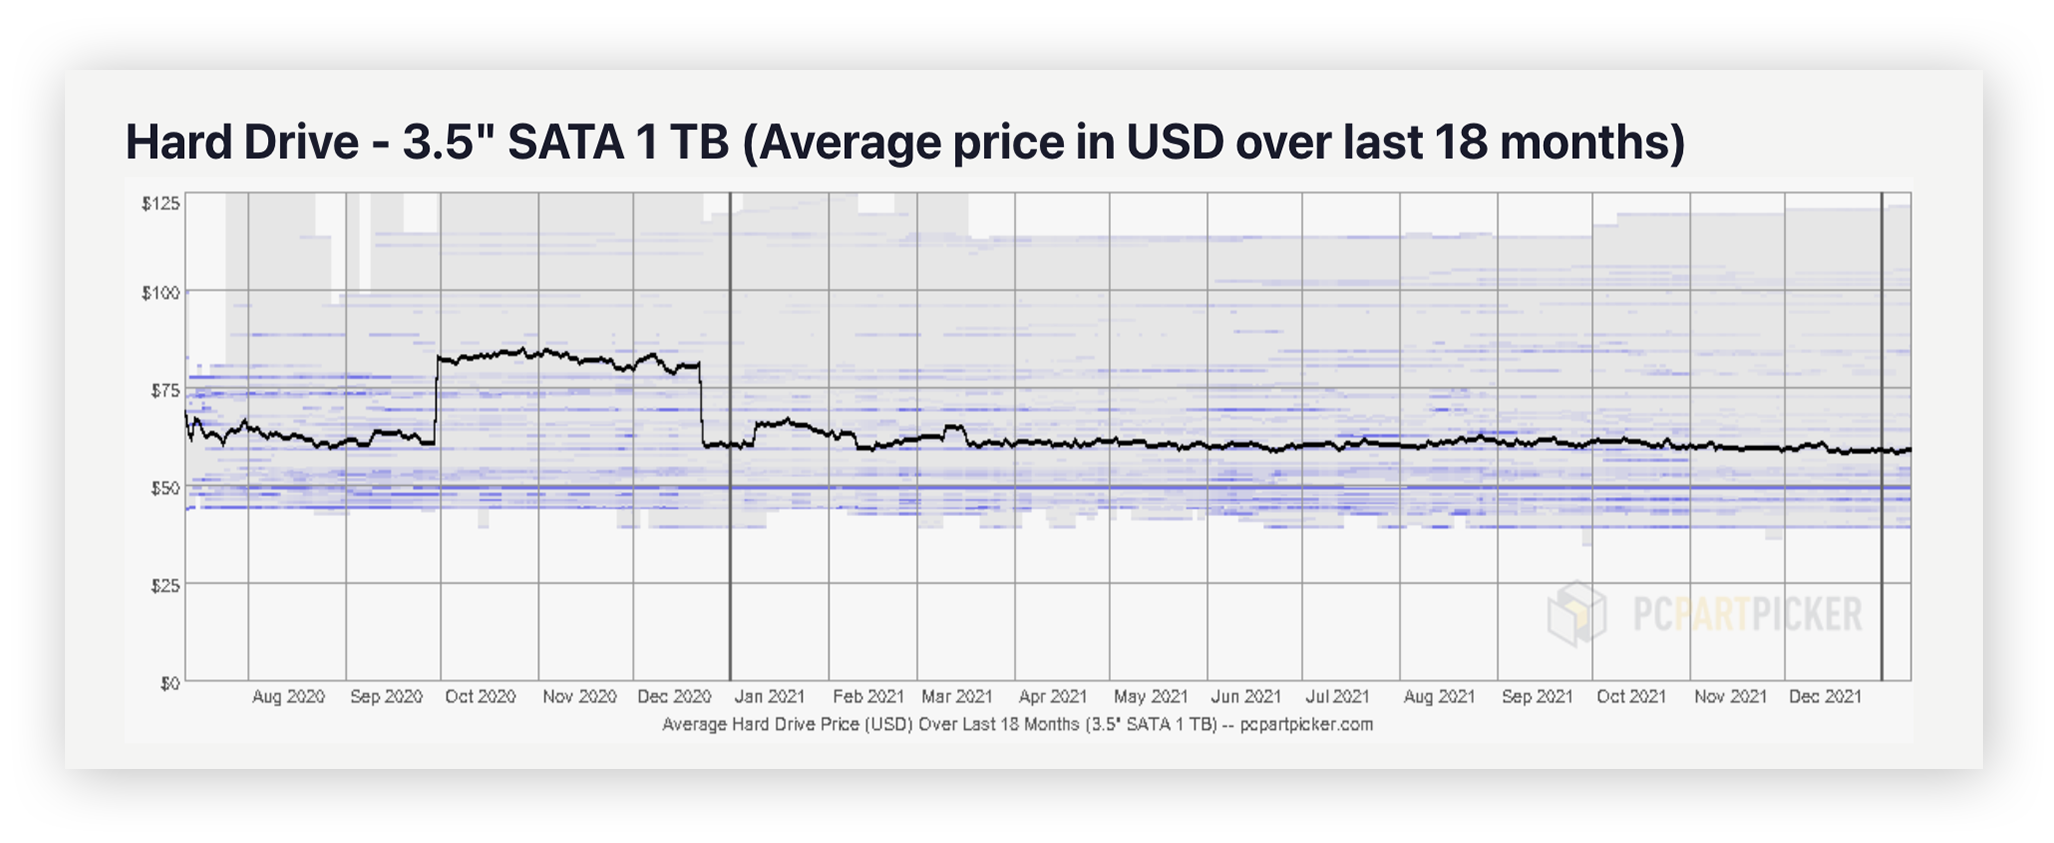 The average price of a 3.5" SATA 1 TB HDD according to PCPartPicker.com